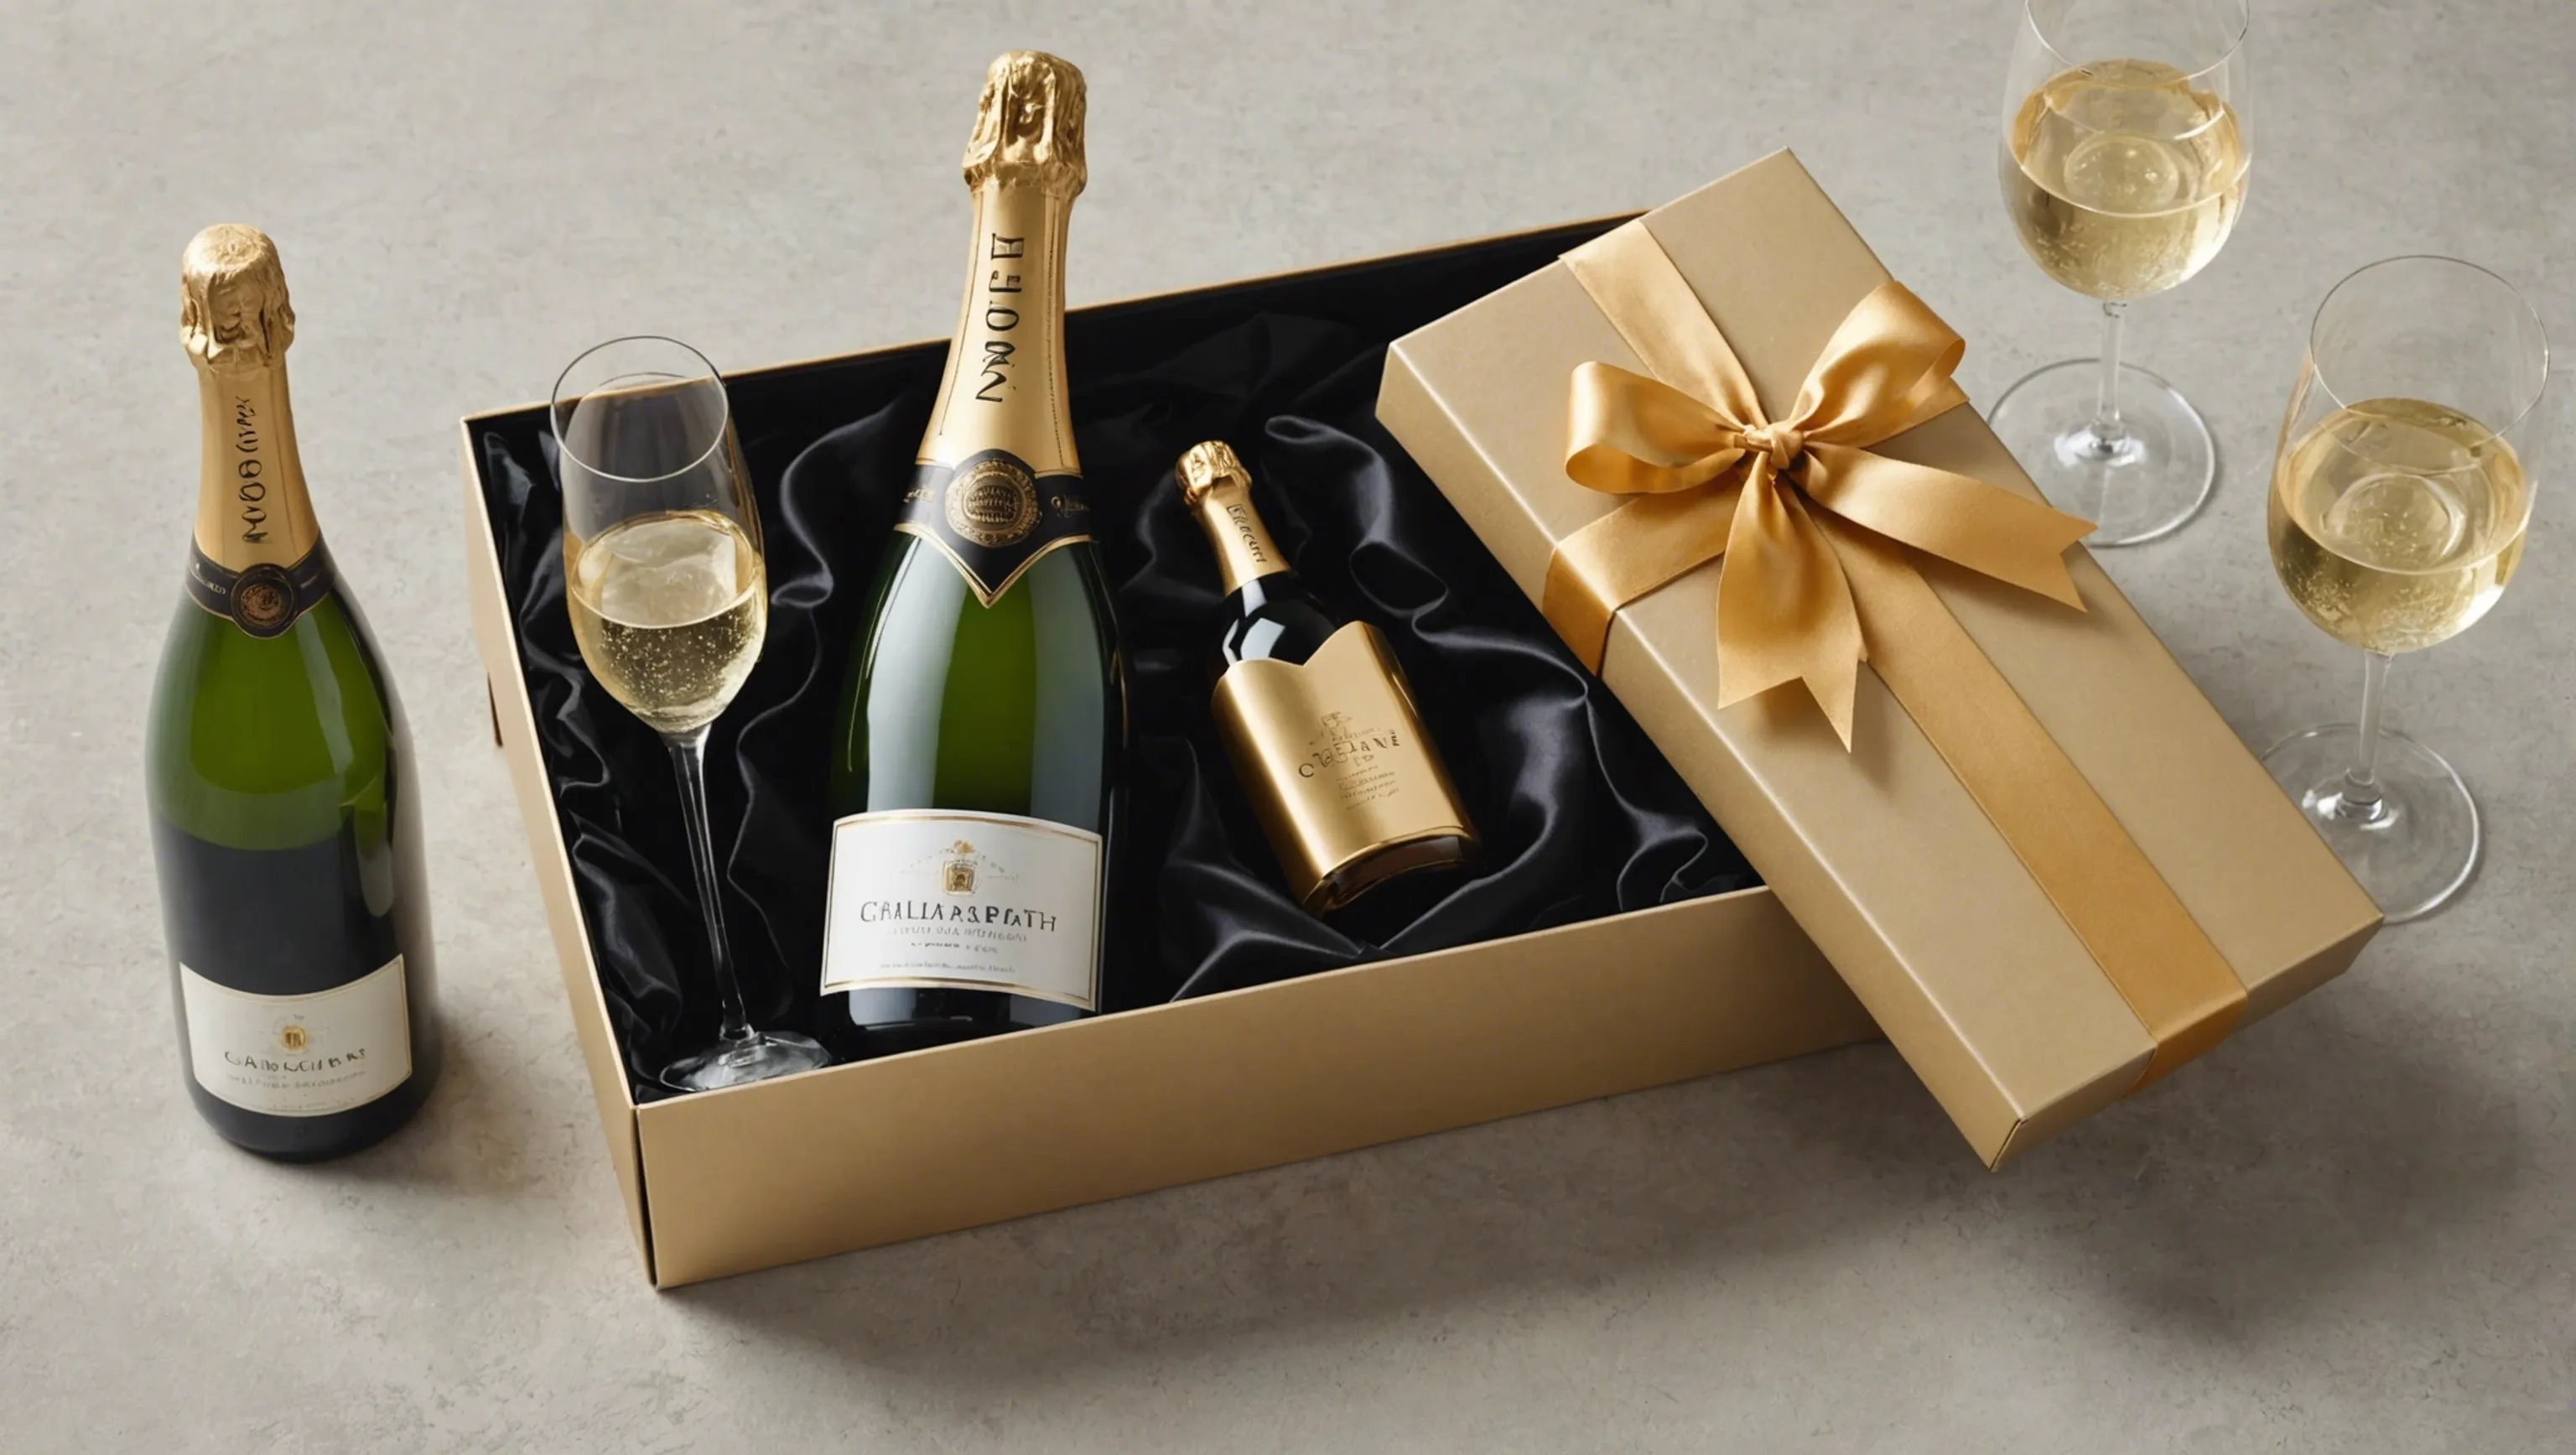 Coffret champagne : le cadeau idéal pour les particuliers